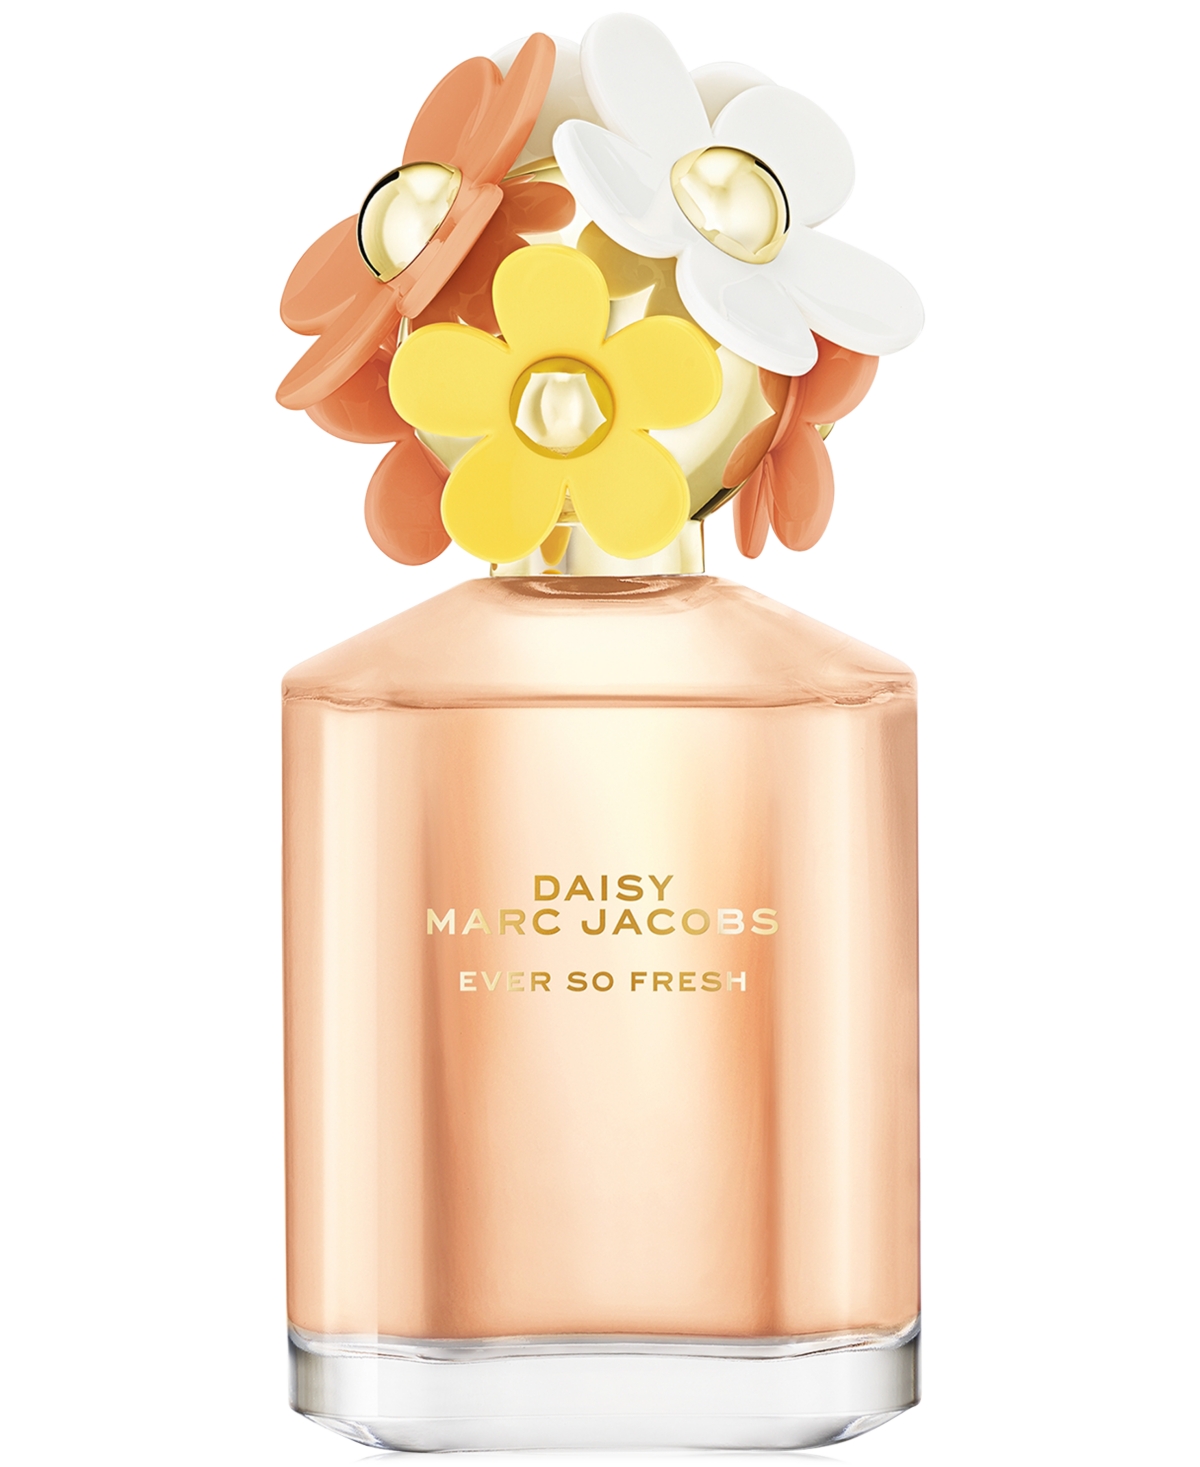 Marc Jacobs Daisy Ever So Fresh Eau de Parfum Spray, 4.2 oz.